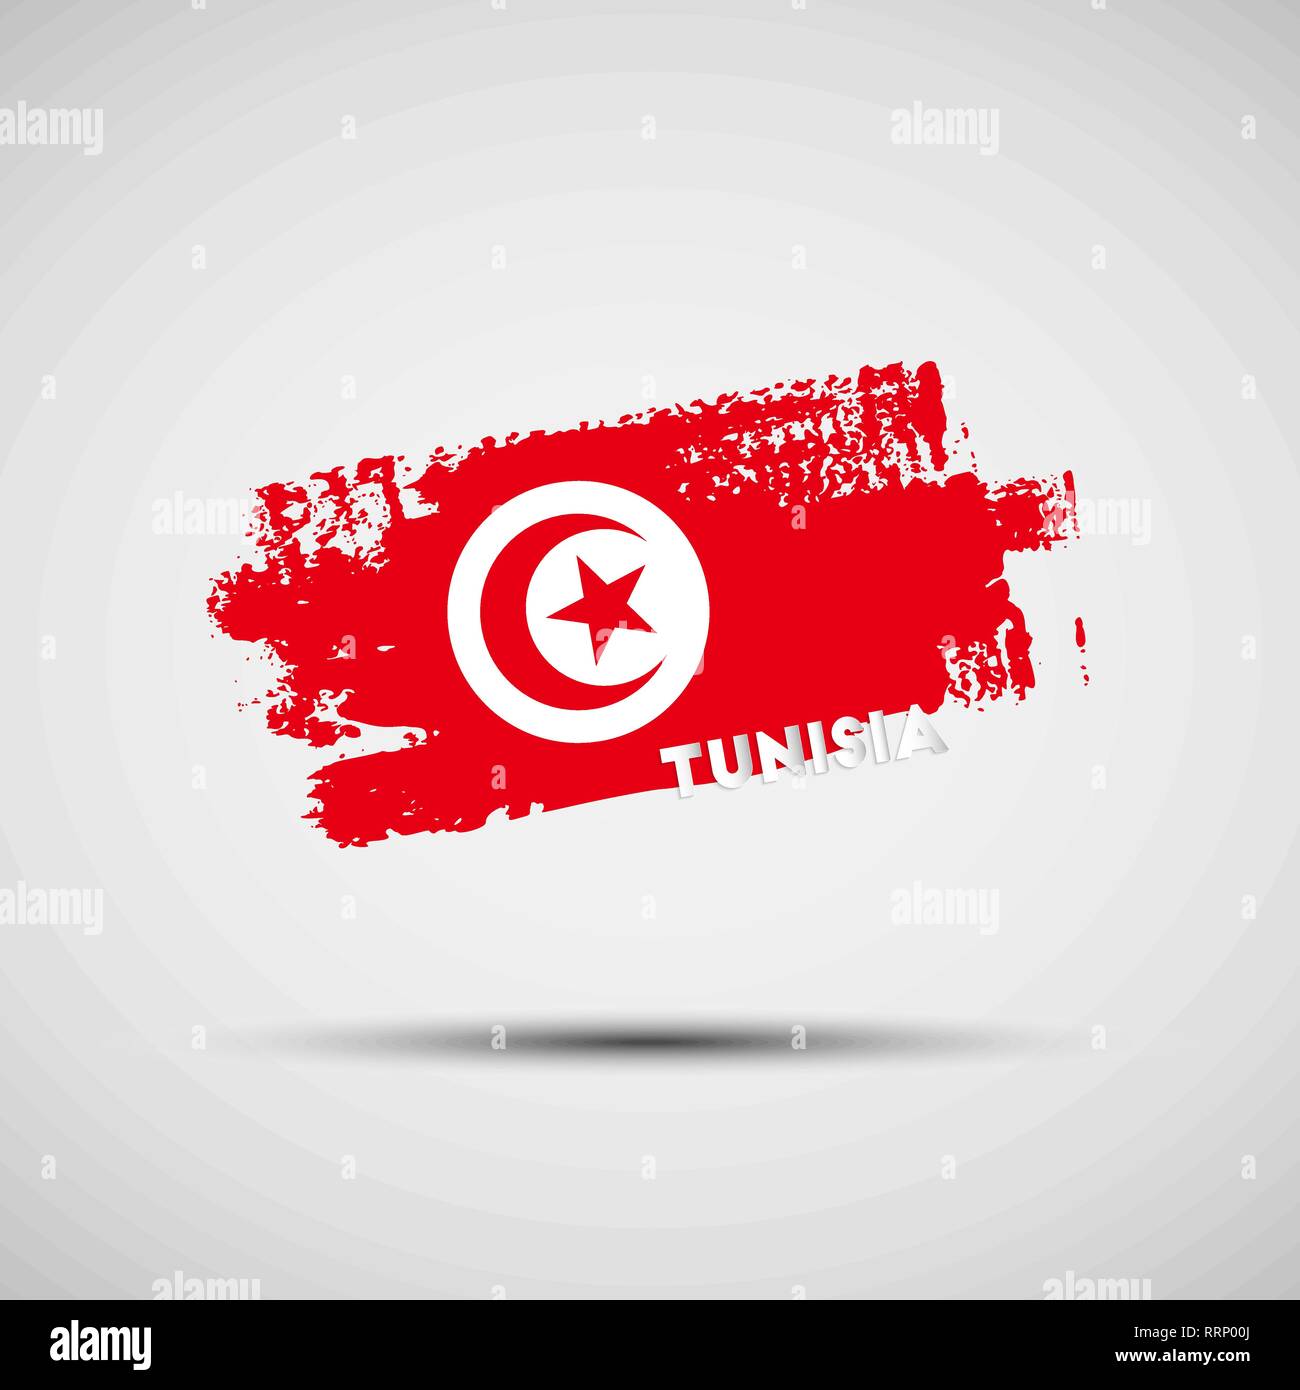 Pabellón de Túnez. Ilustración vectorial de grunge trazo de pincel con los colores de la bandera nacional de Túnez por su diseño gráfico y web Ilustración del Vector